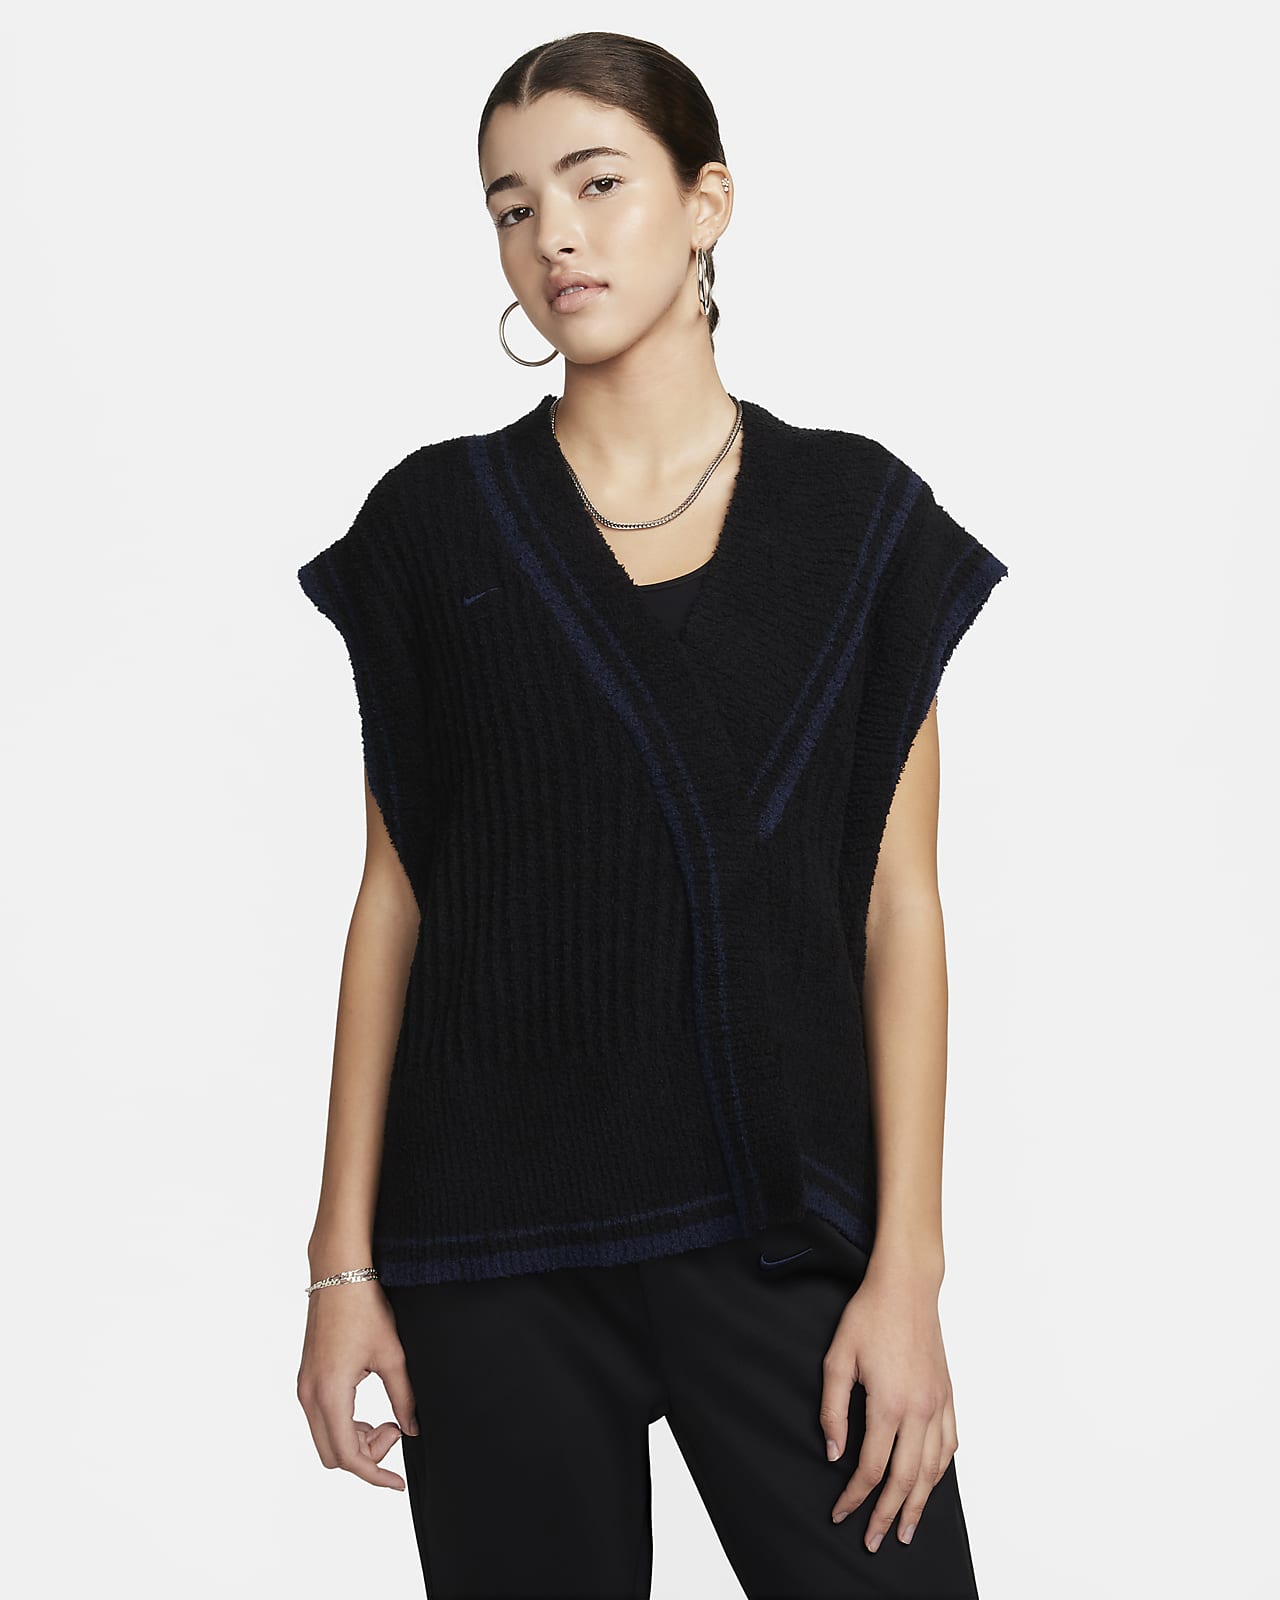 Nike Sportswear Collection Women's Knit Vest